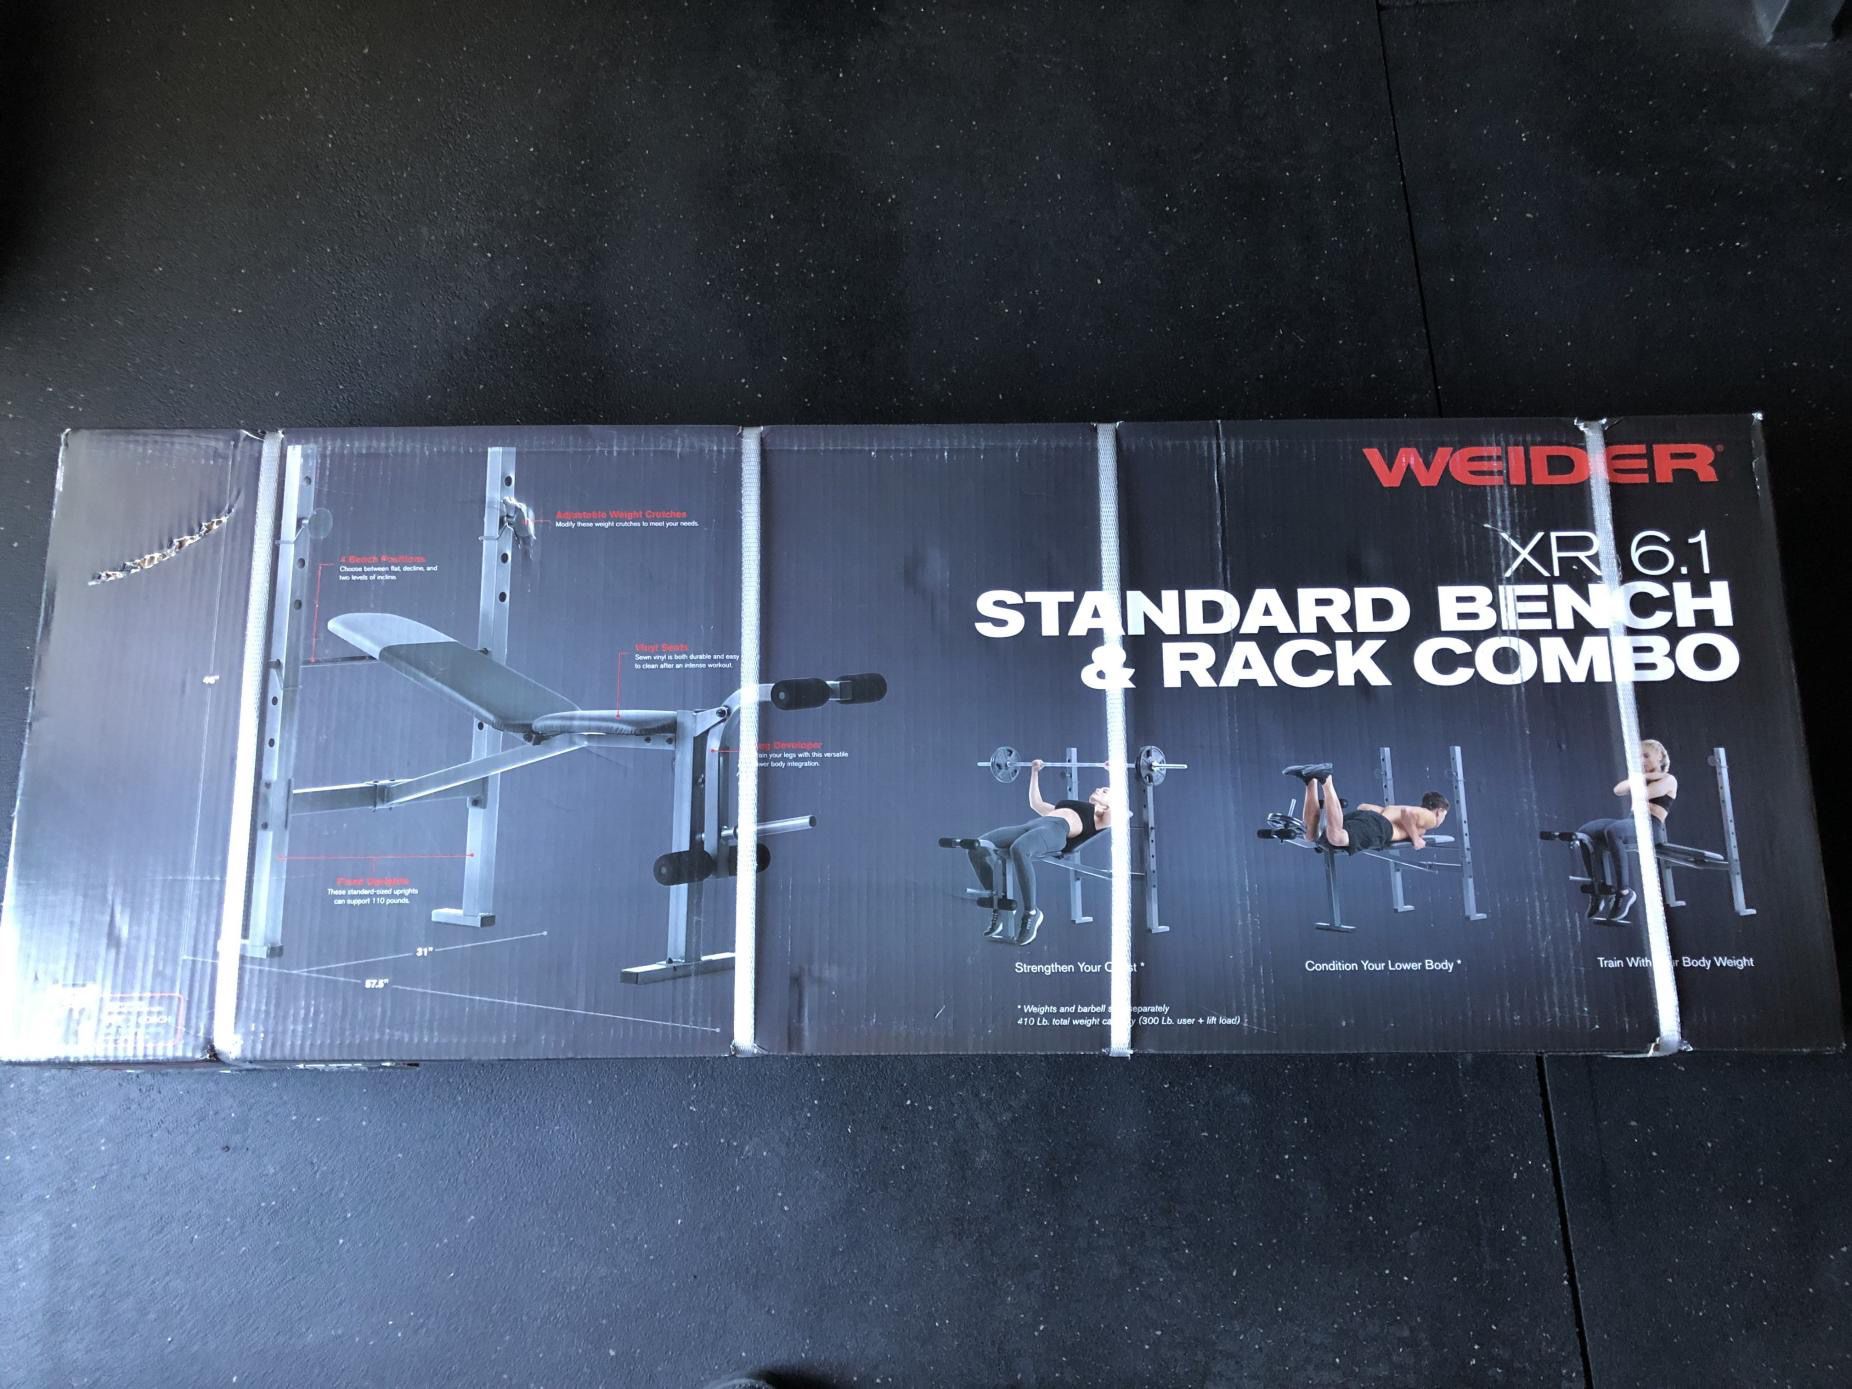 Weight bench/rack combo weider 6.1